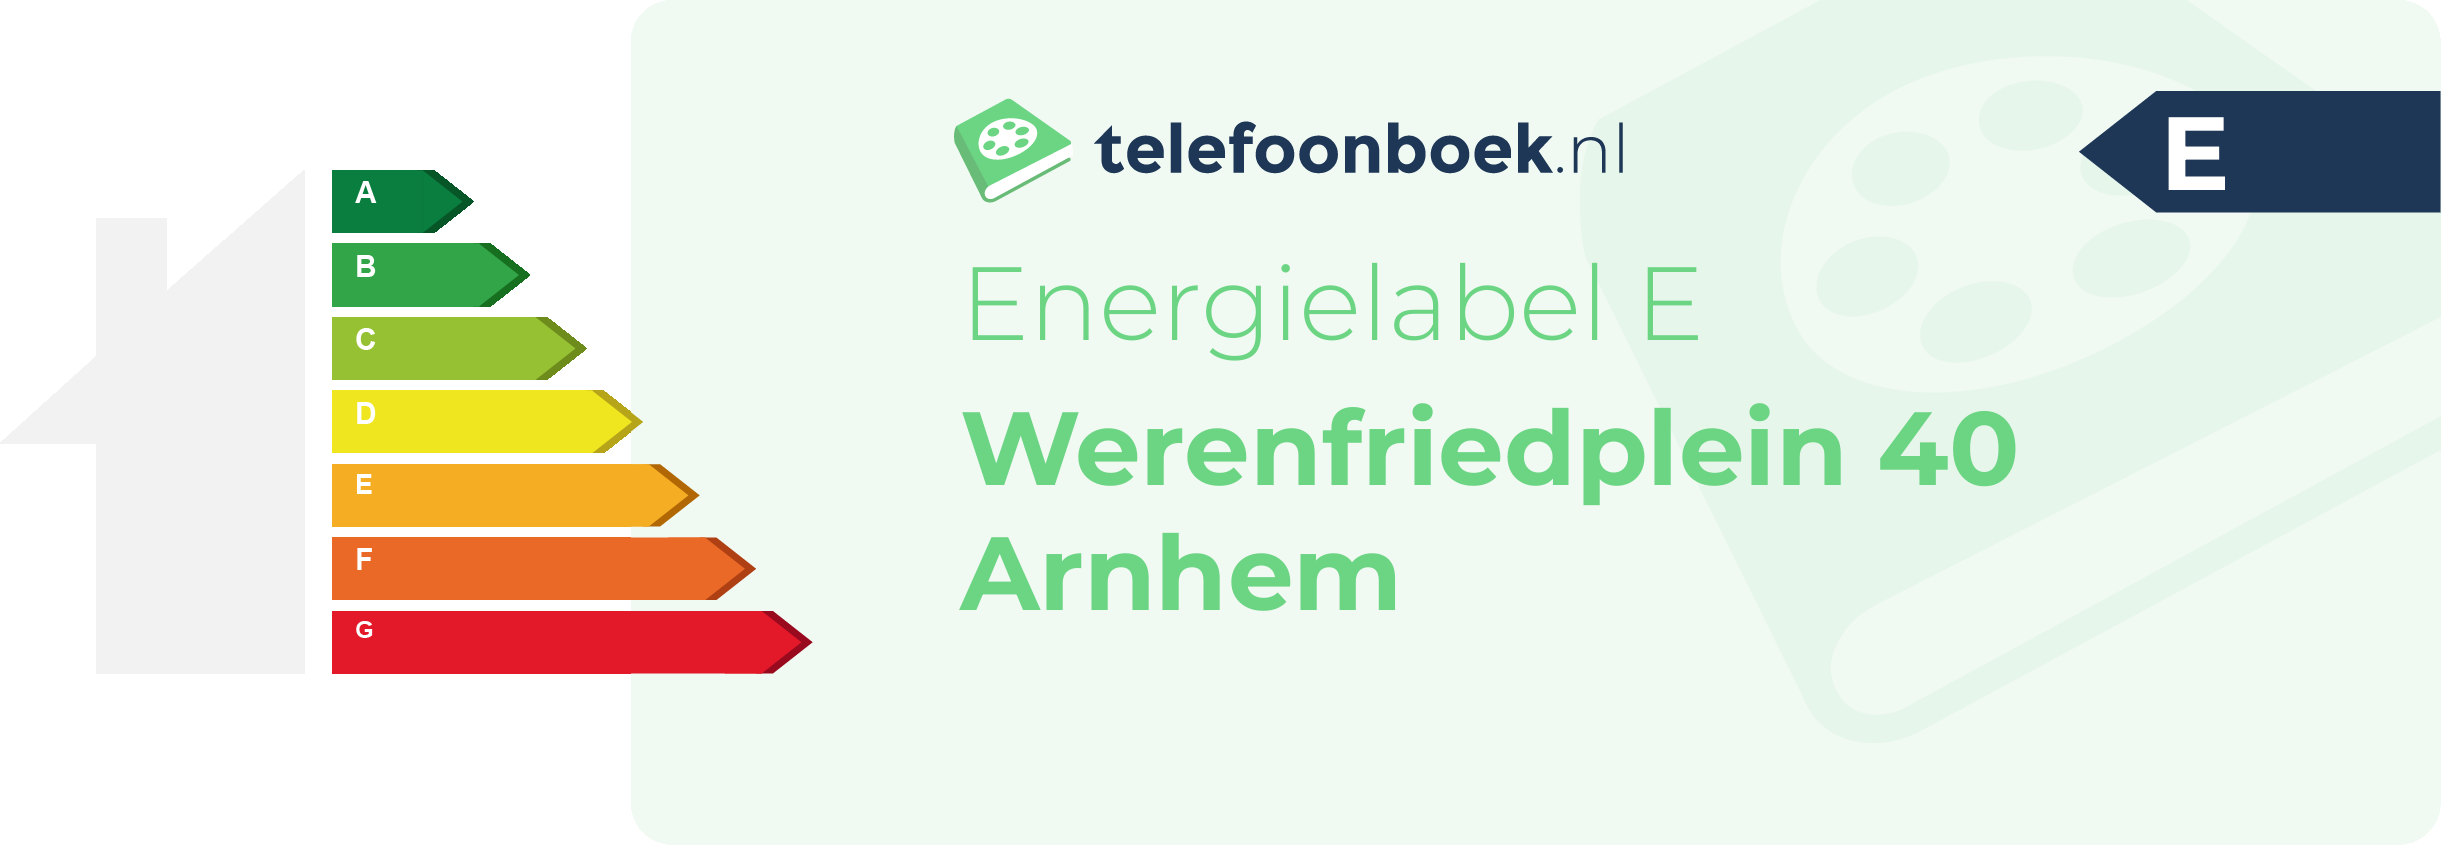 Energielabel Werenfriedplein 40 Arnhem